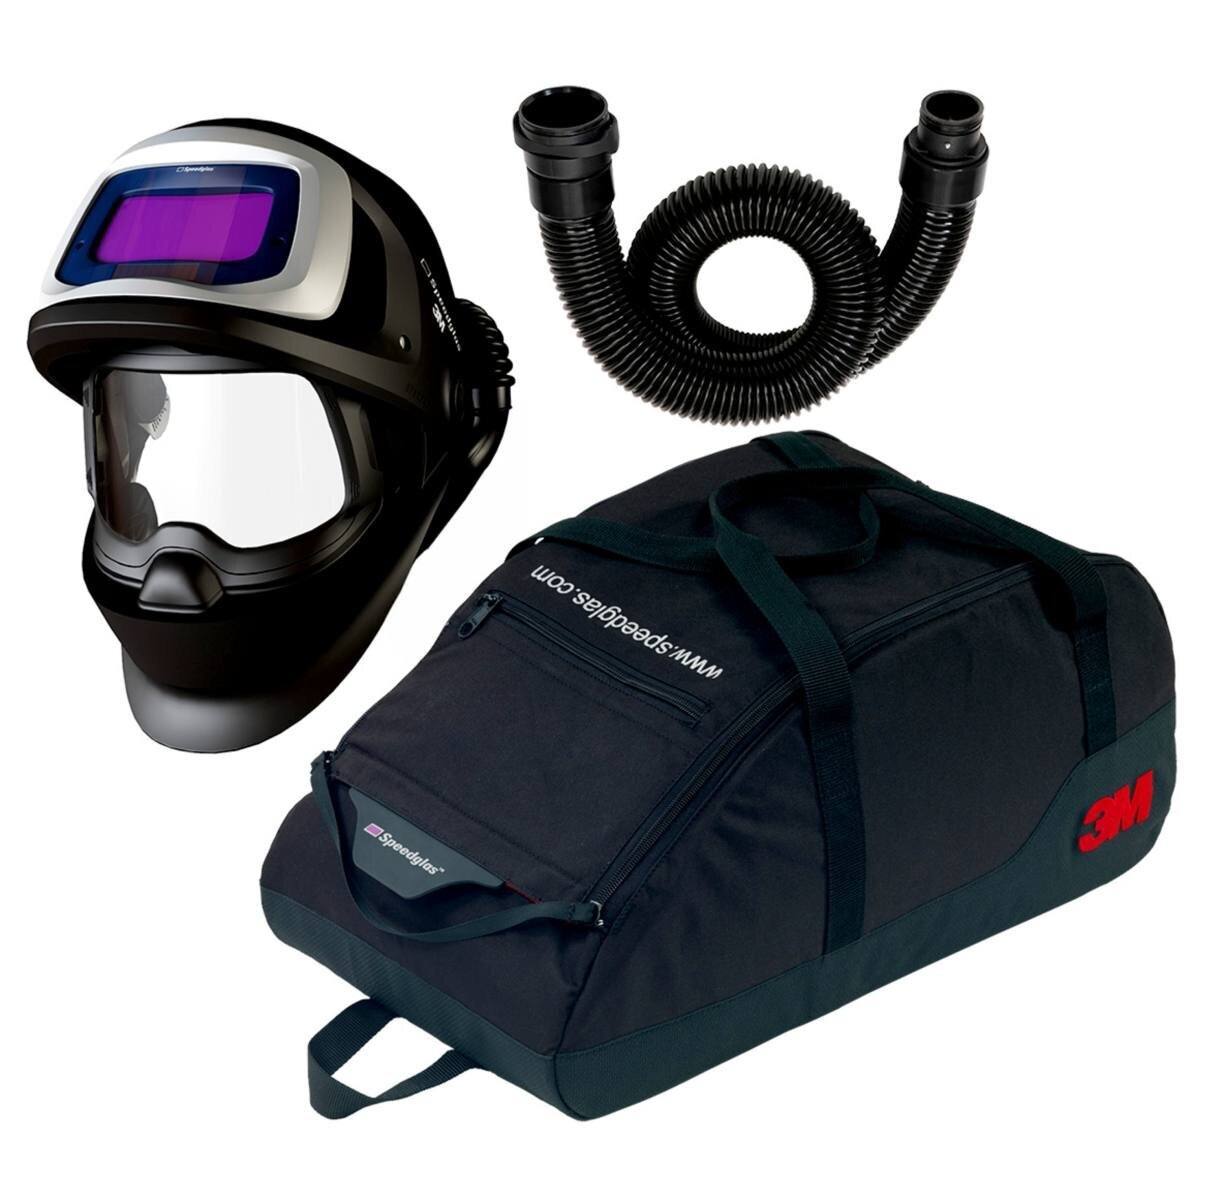 Masque de soudure 3M Speedglas 9100 FX Air avec 9100V ADF, flexible d'air inclus, sac de rangement inclus 79 01 01 - Kit de mise à niveau TH3 #549005